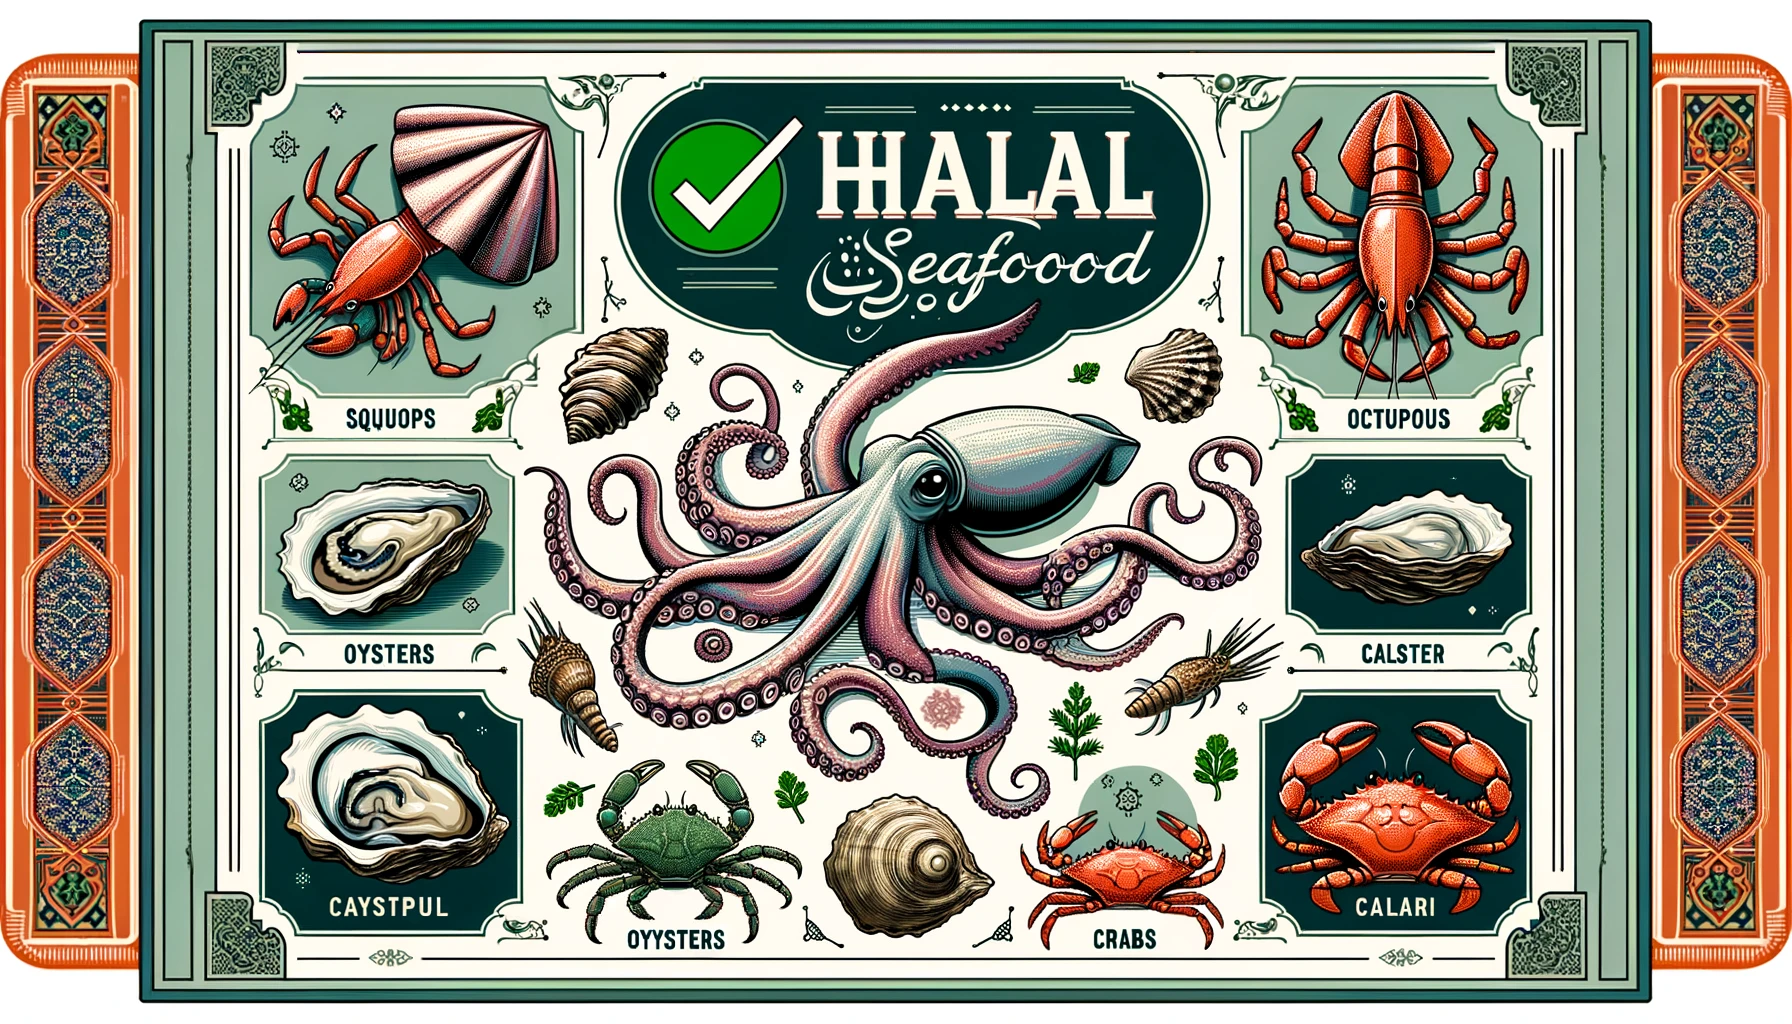 Calamari halal sign